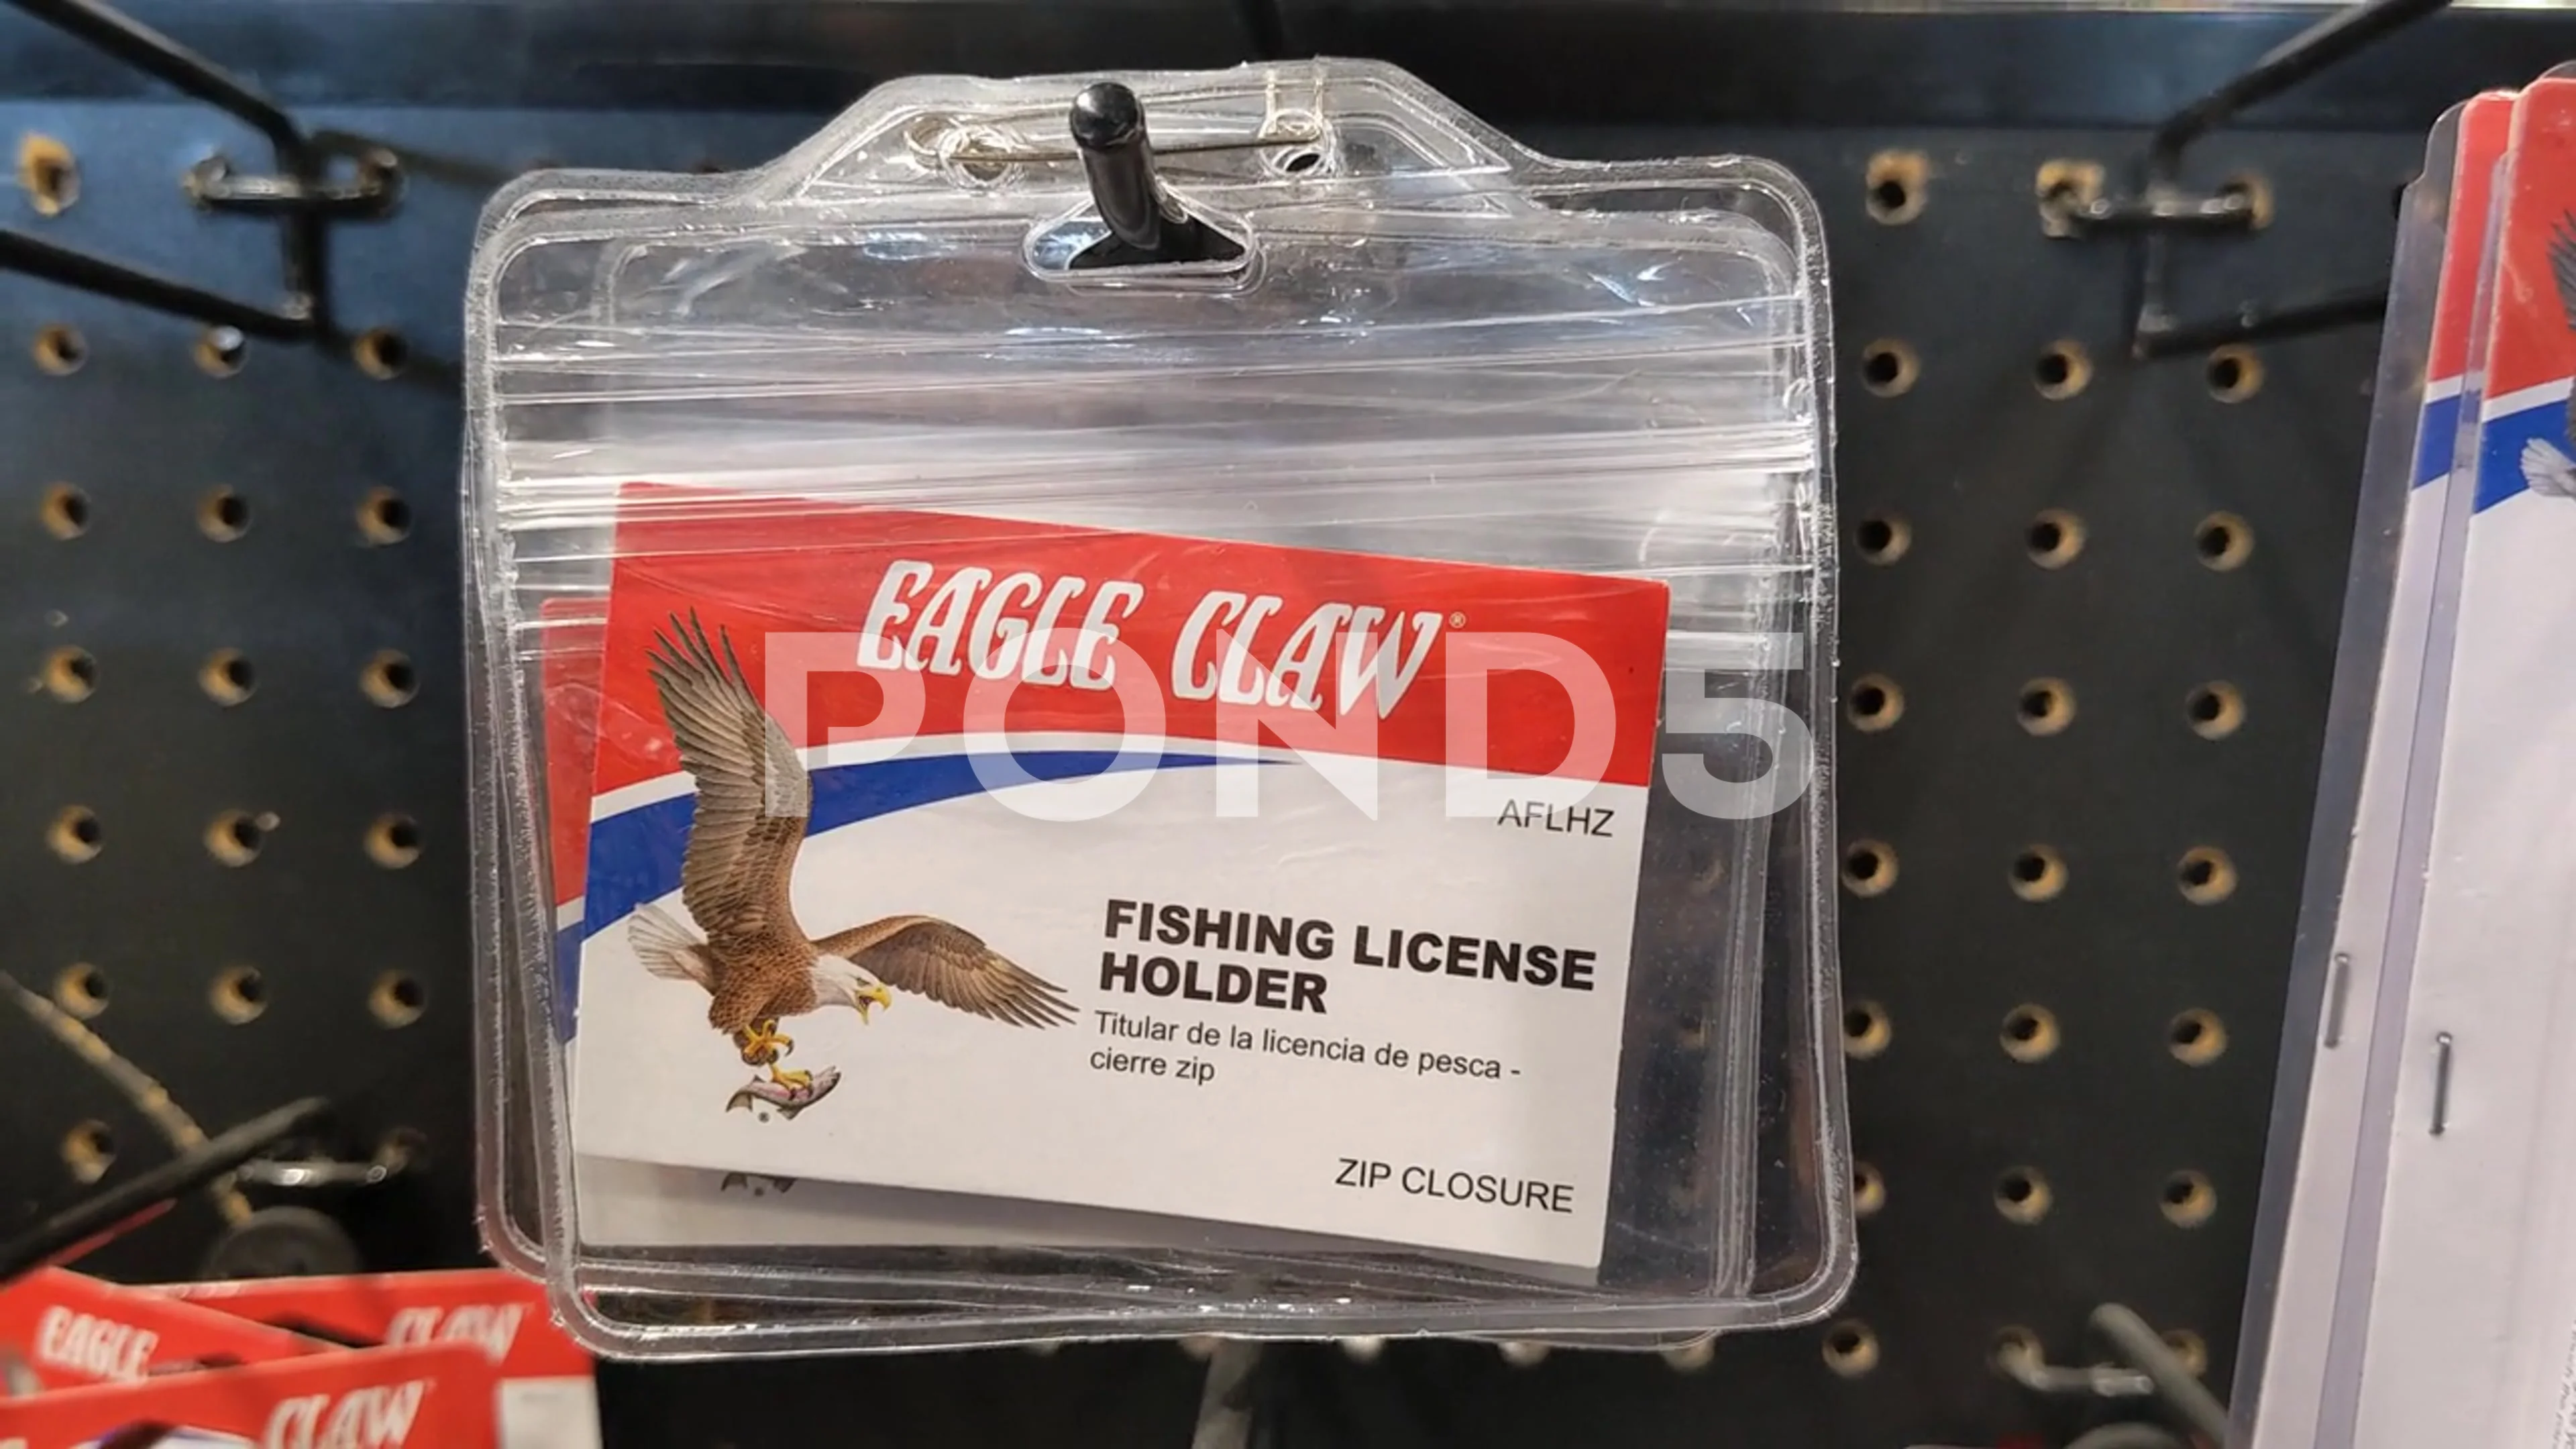 https://images.pond5.com/eagle-claw-fishing-license-holder-footage-169527542_prevstill.jpeg